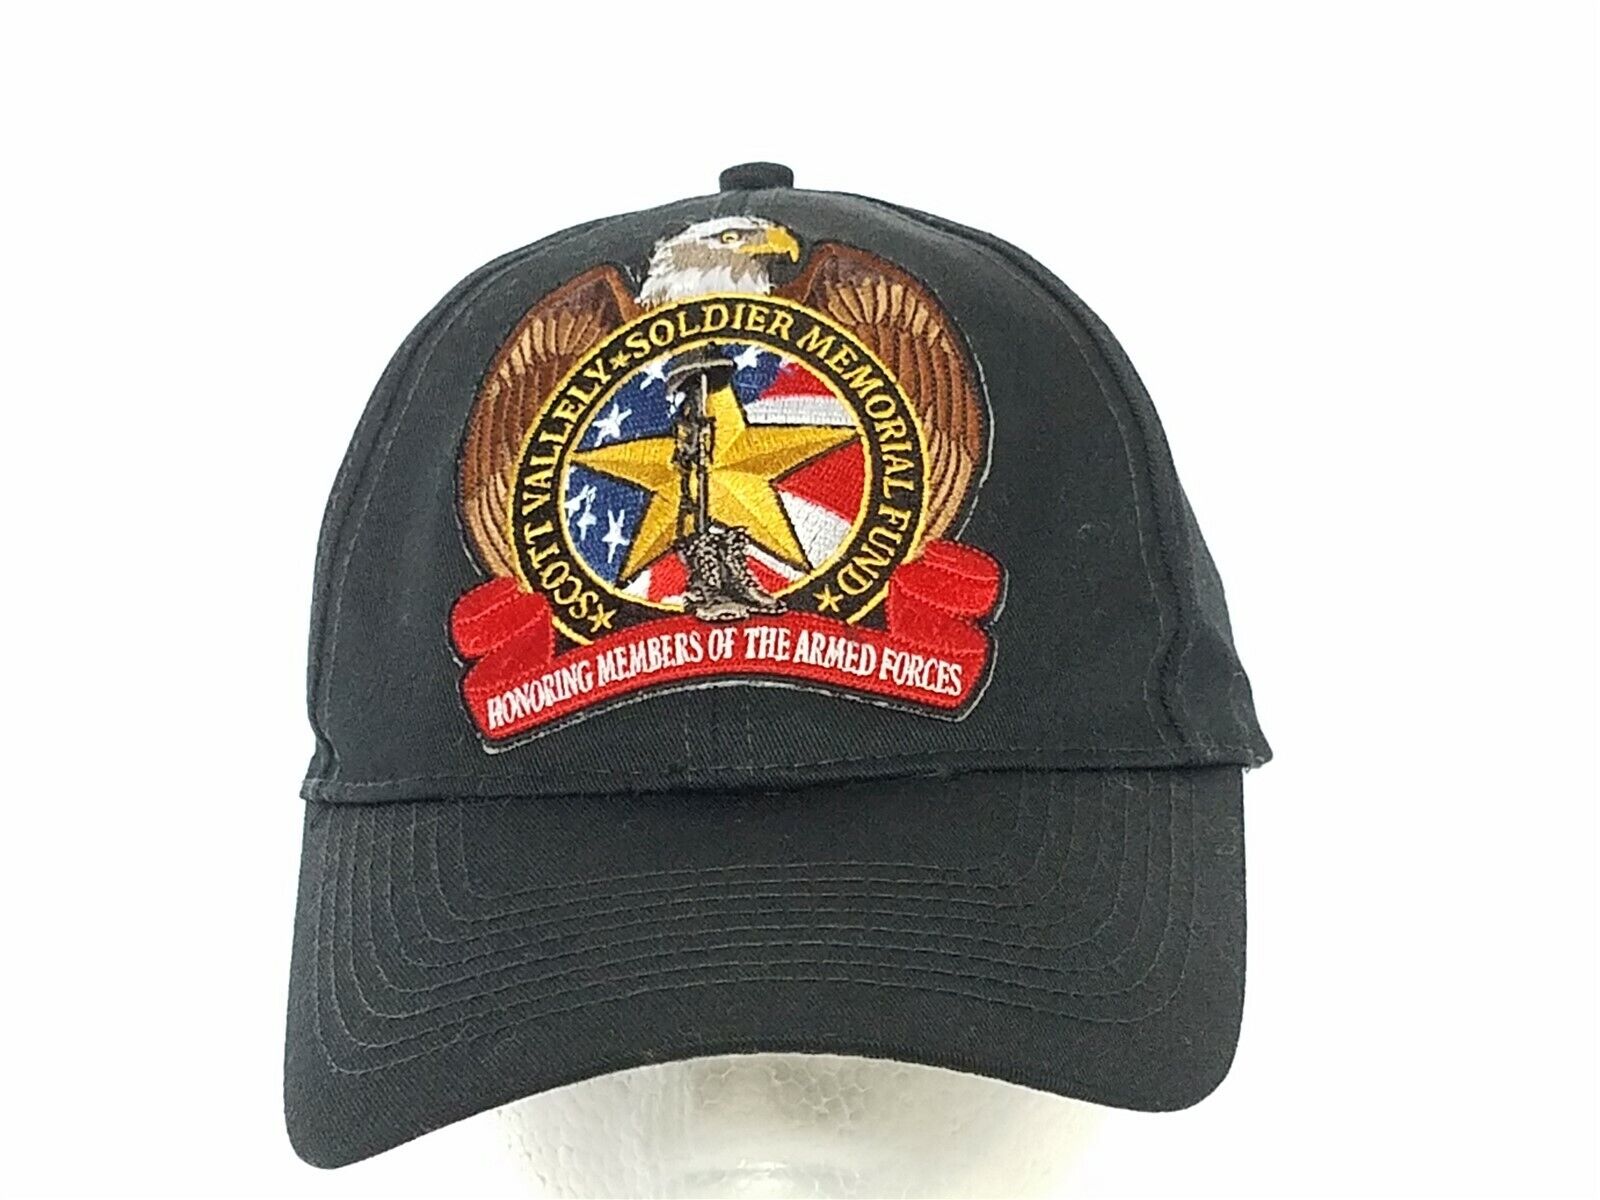 Scott Valley Soldier Memorial Fund Black Ball Cap Hat Montana Strapback Patch